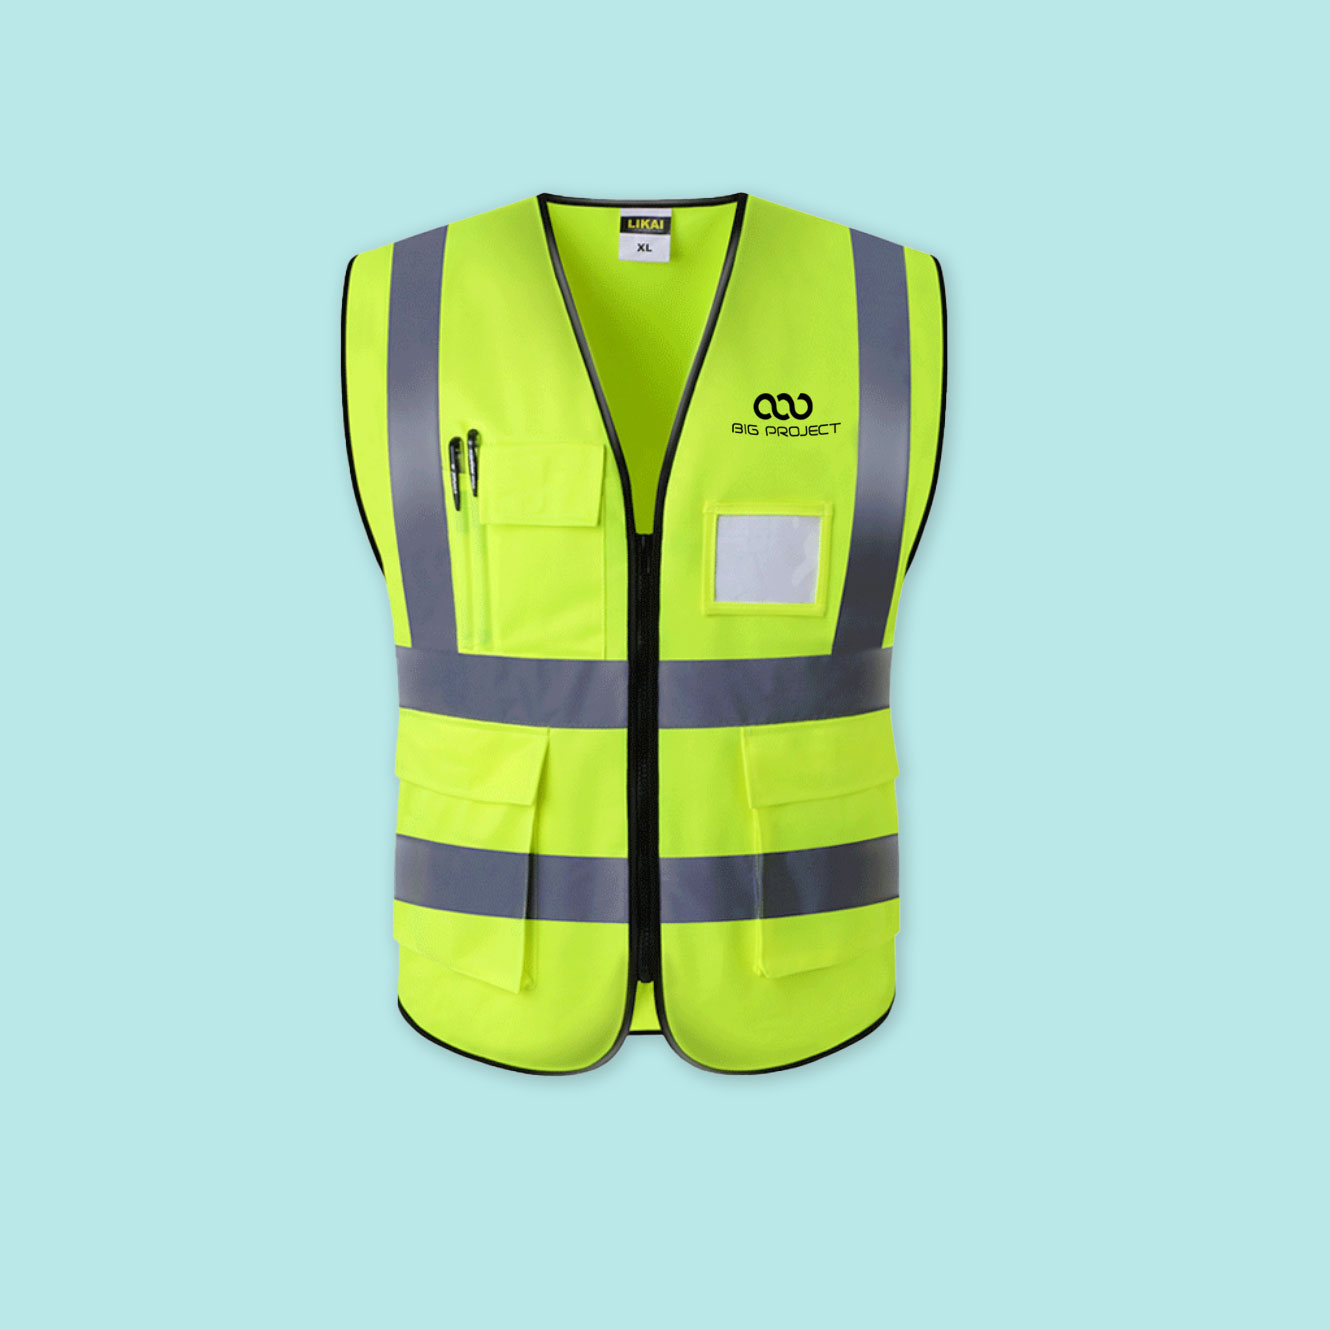 https://bigbanner.com.au/wp-content/uploads/2020/02/Reflective-Safety-Vest-1.jpg